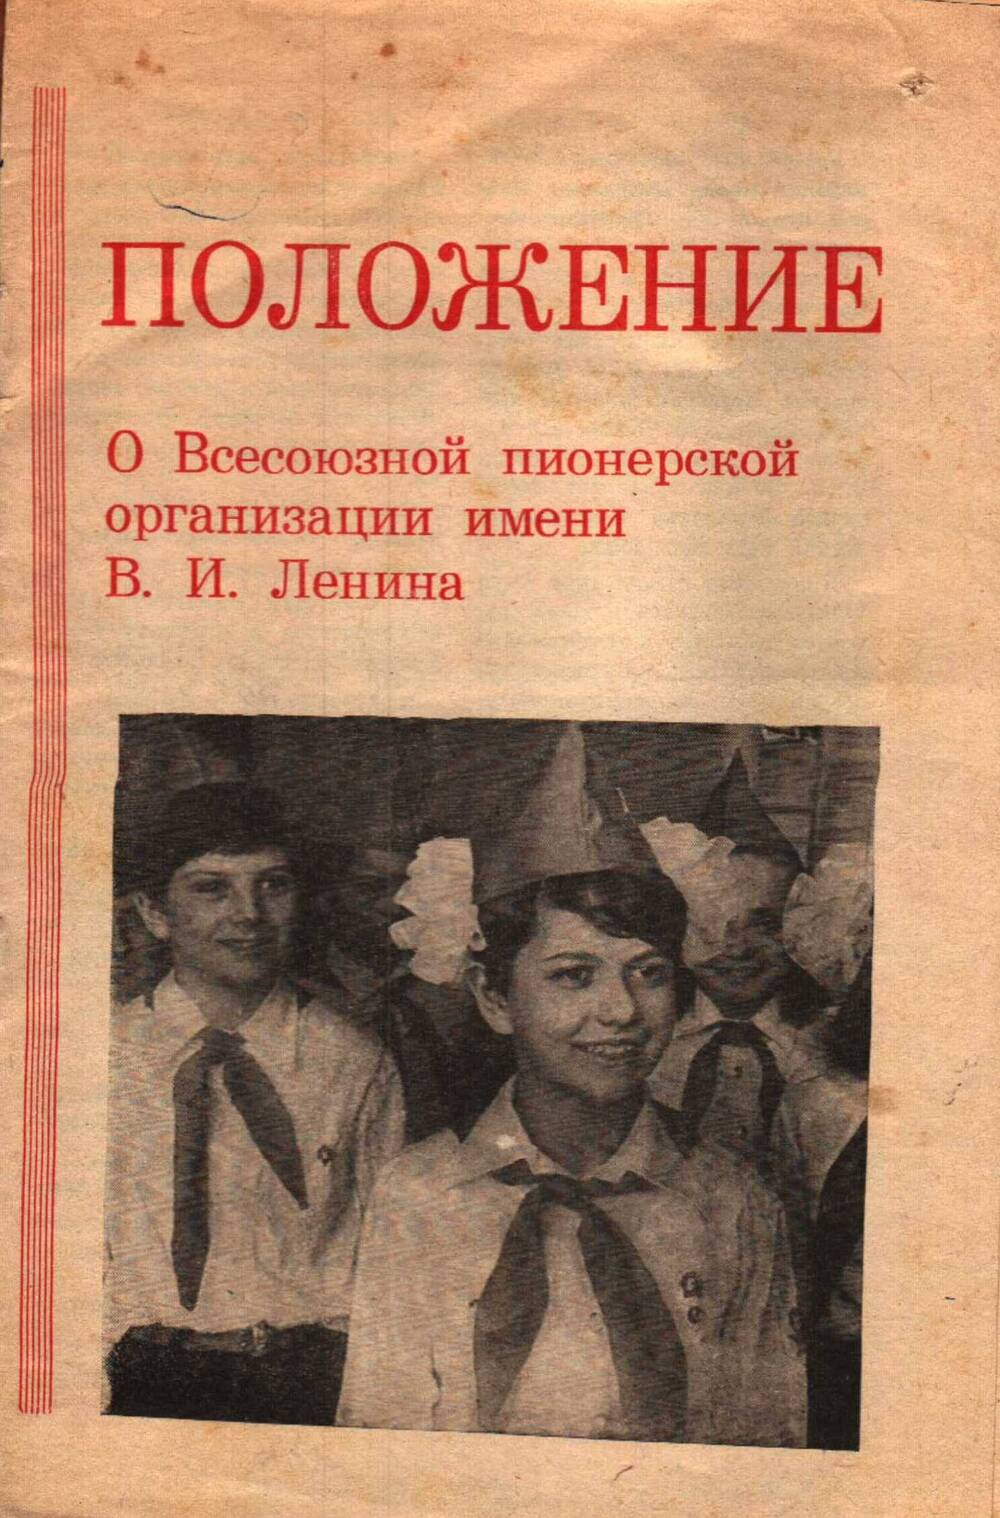 Положение о Всесоюзной пионерской организации им. В.И. Ленина, 1960 г.